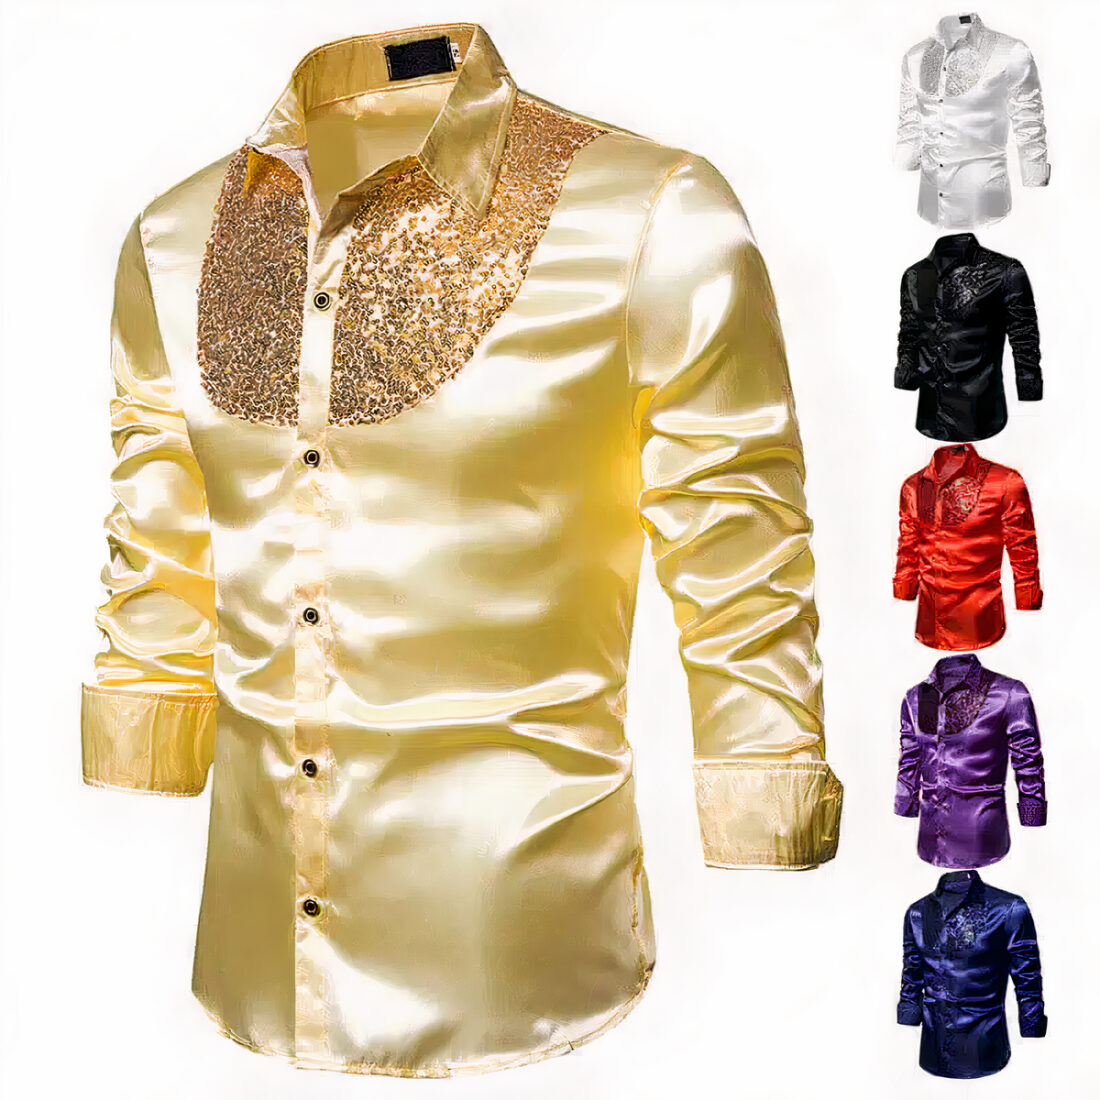 Chemise dorée avec paillettes sur fond blanc. À droite, on voit des les différentes déclinaisons de couleurs.